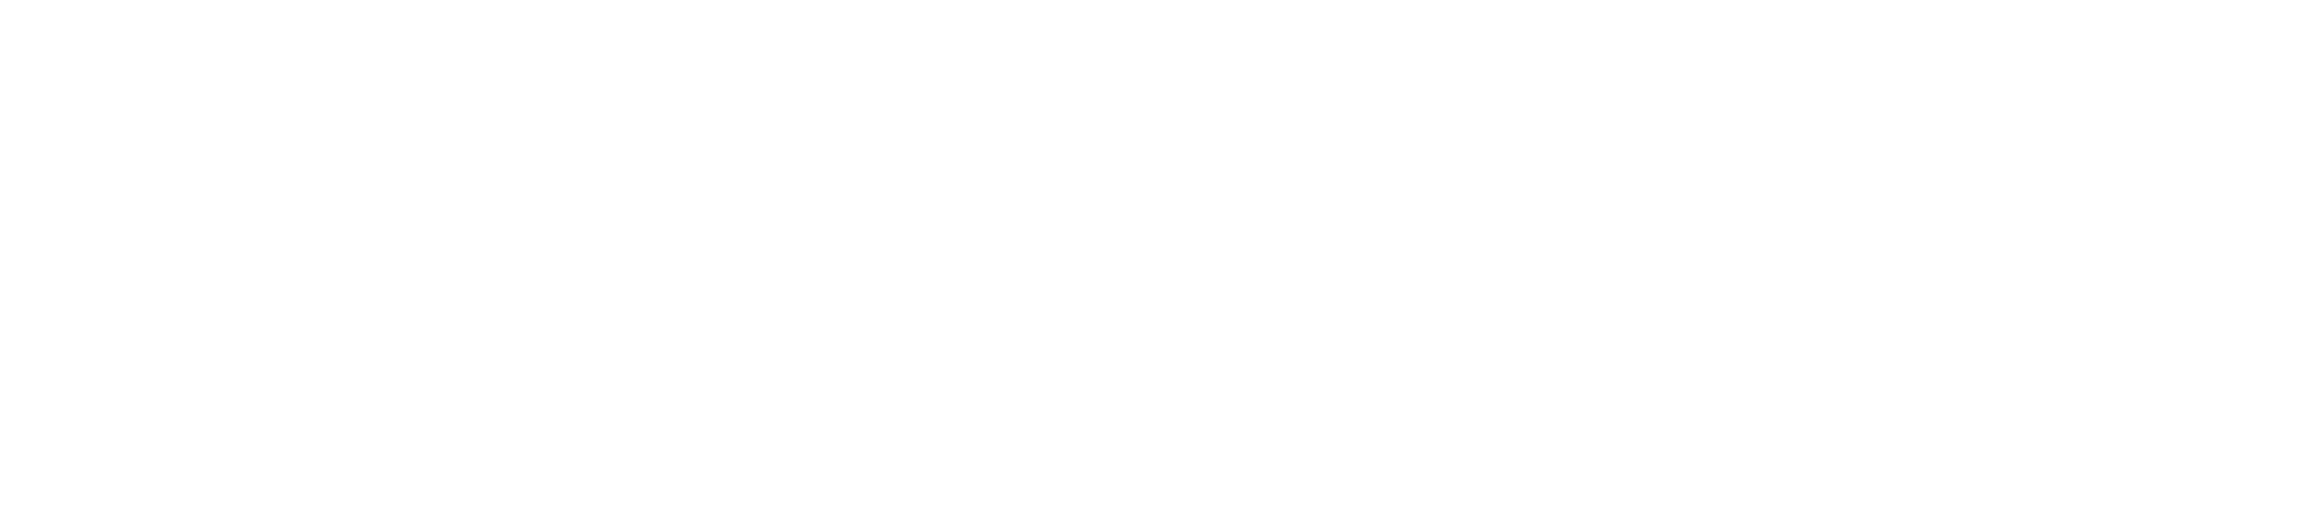 The Victoria